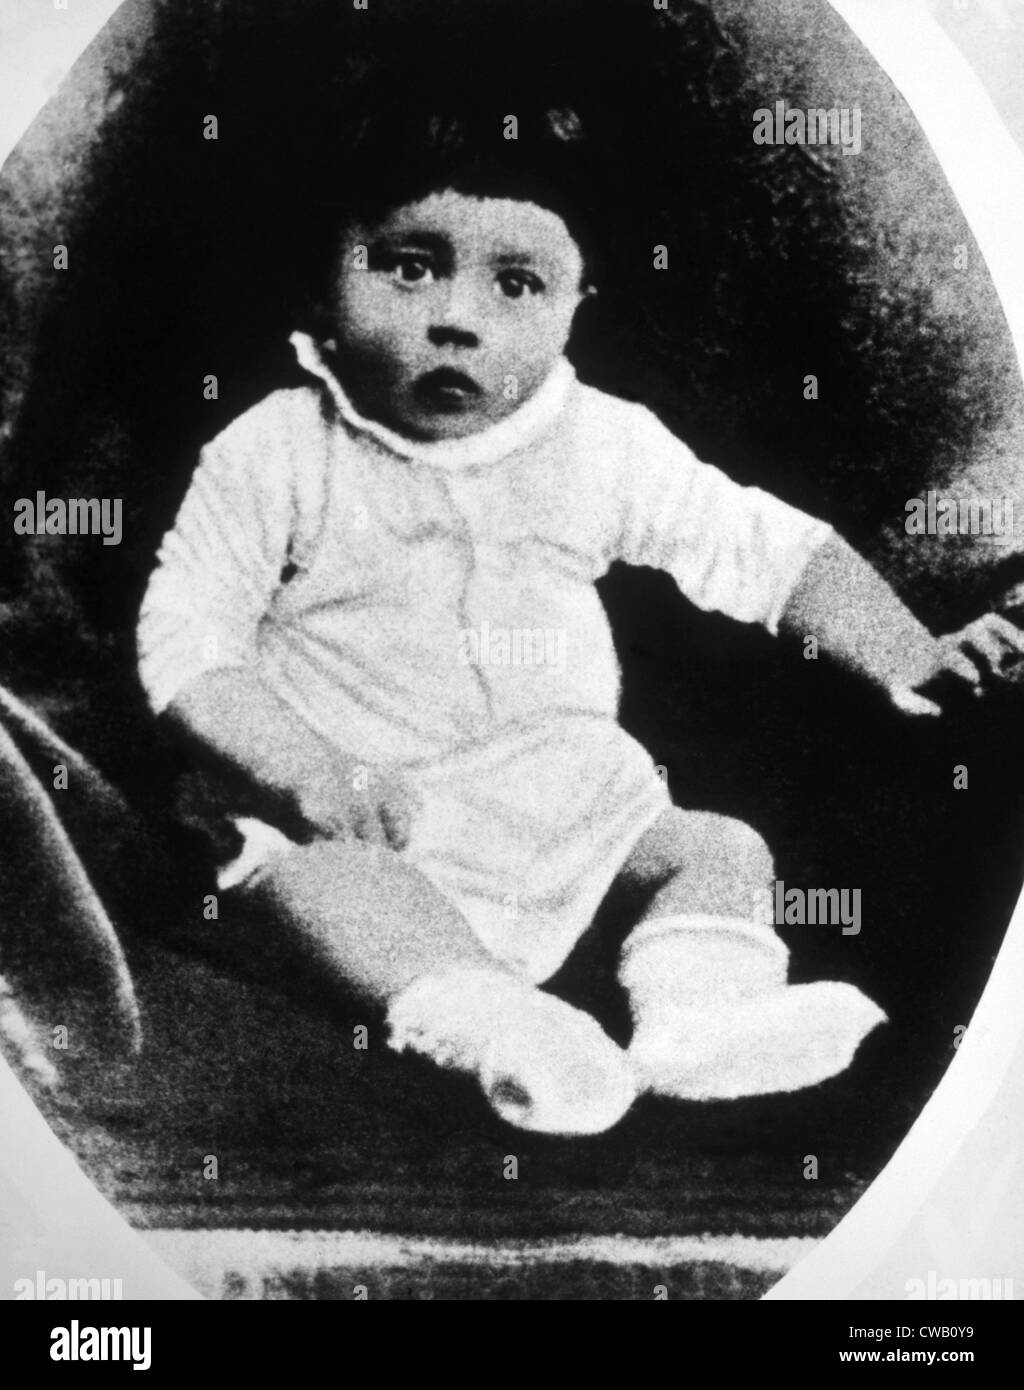 Adolf Hitler come un bambino, fotografia scattata da J.F. Klinger di Brauna, Austria, 1890 Foto Stock